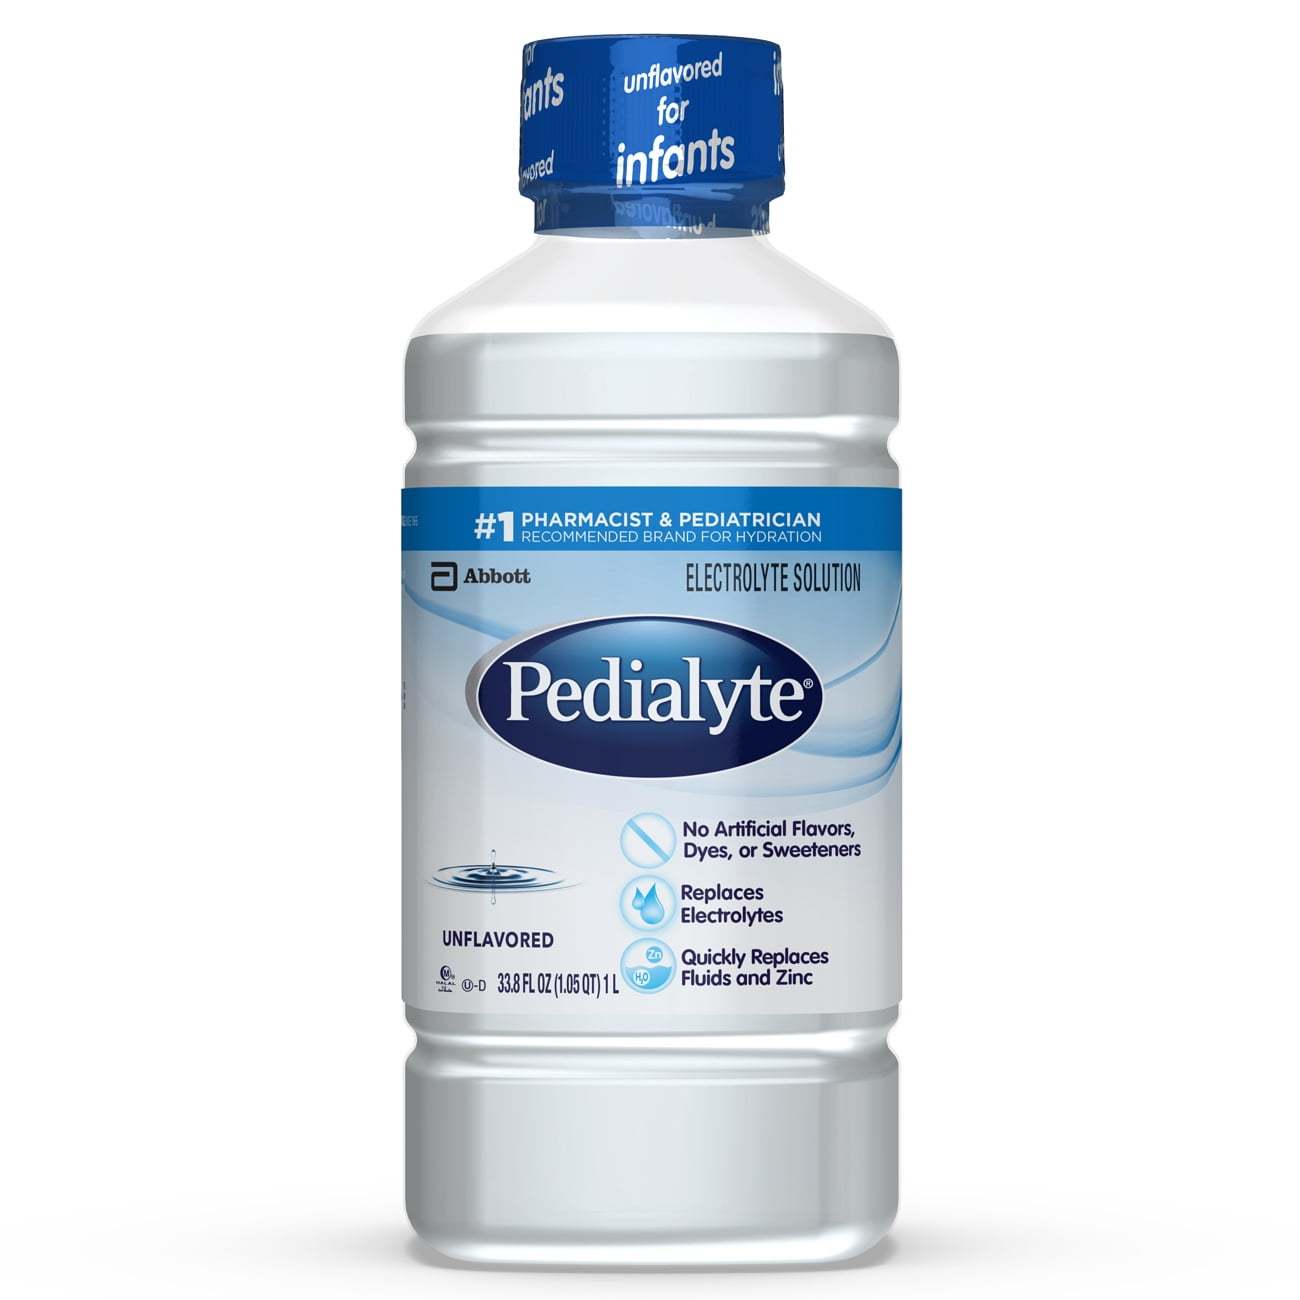 pedialyte-regular-unflavored-liquid-12-fl-oz-360-ml-bottle-walmart